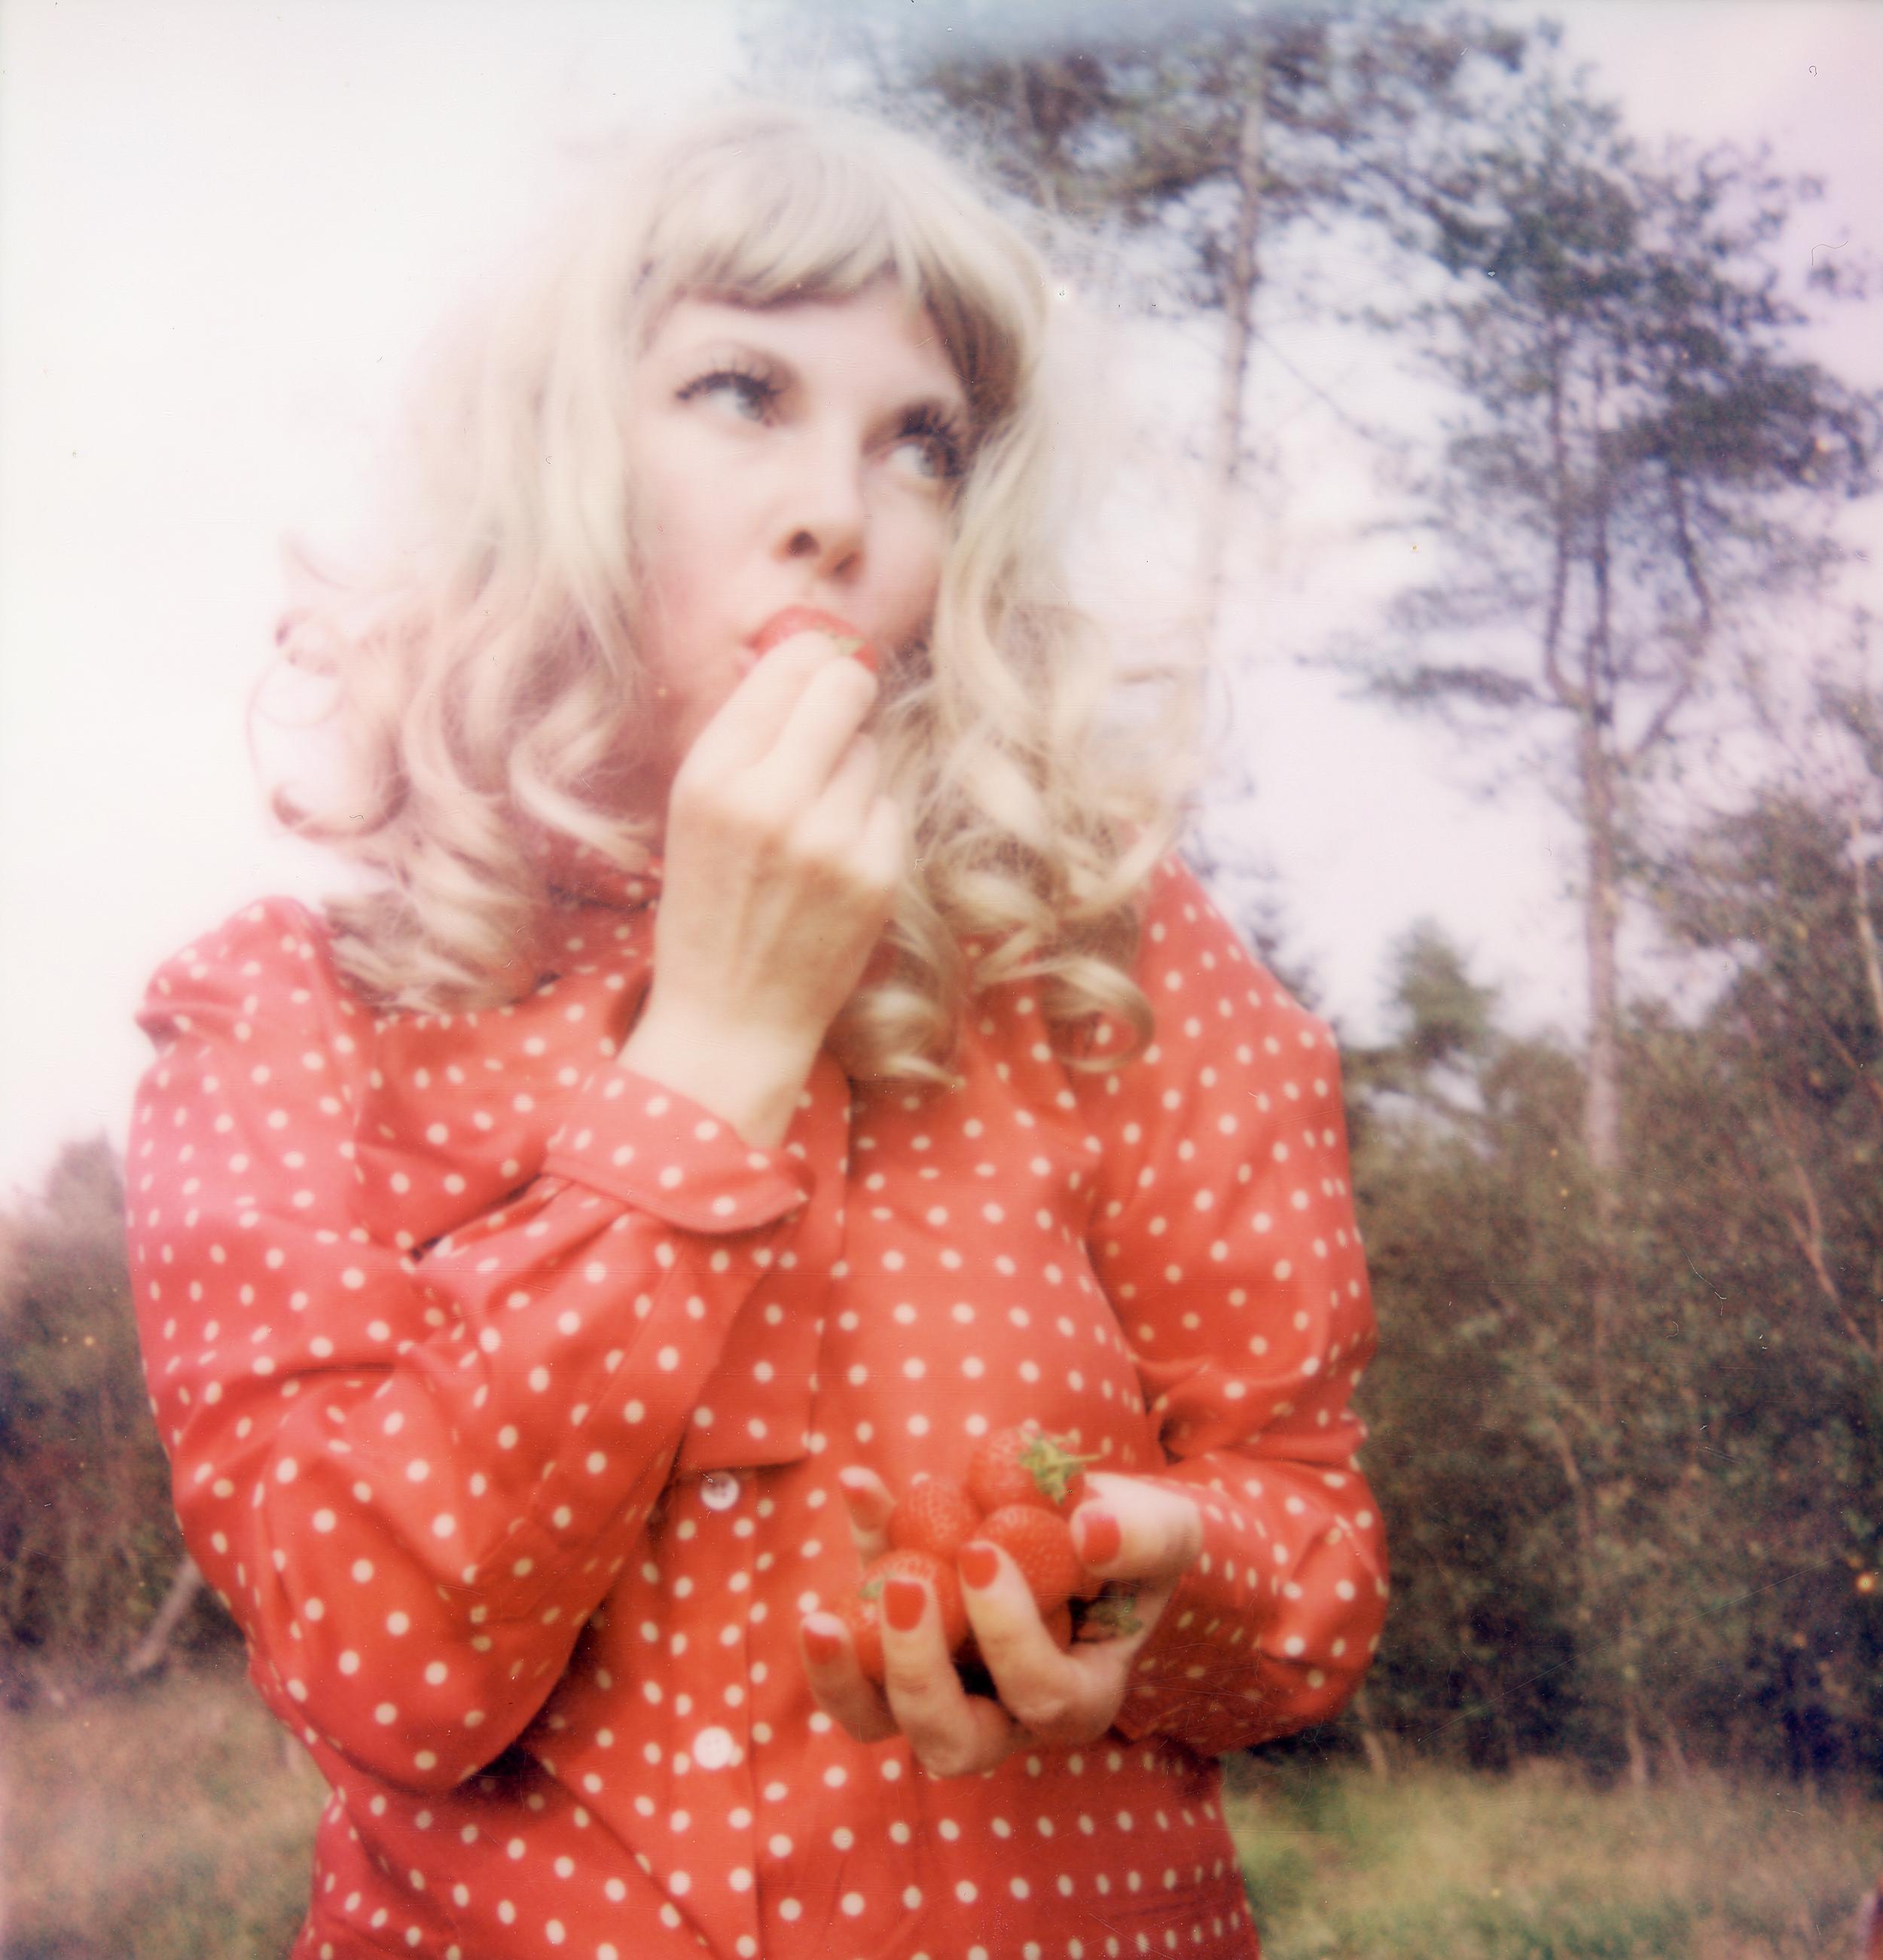 Color Photograph Clare Marie Bailey - Polaroid contemporain, femme, blond fraise, XXIe siècle